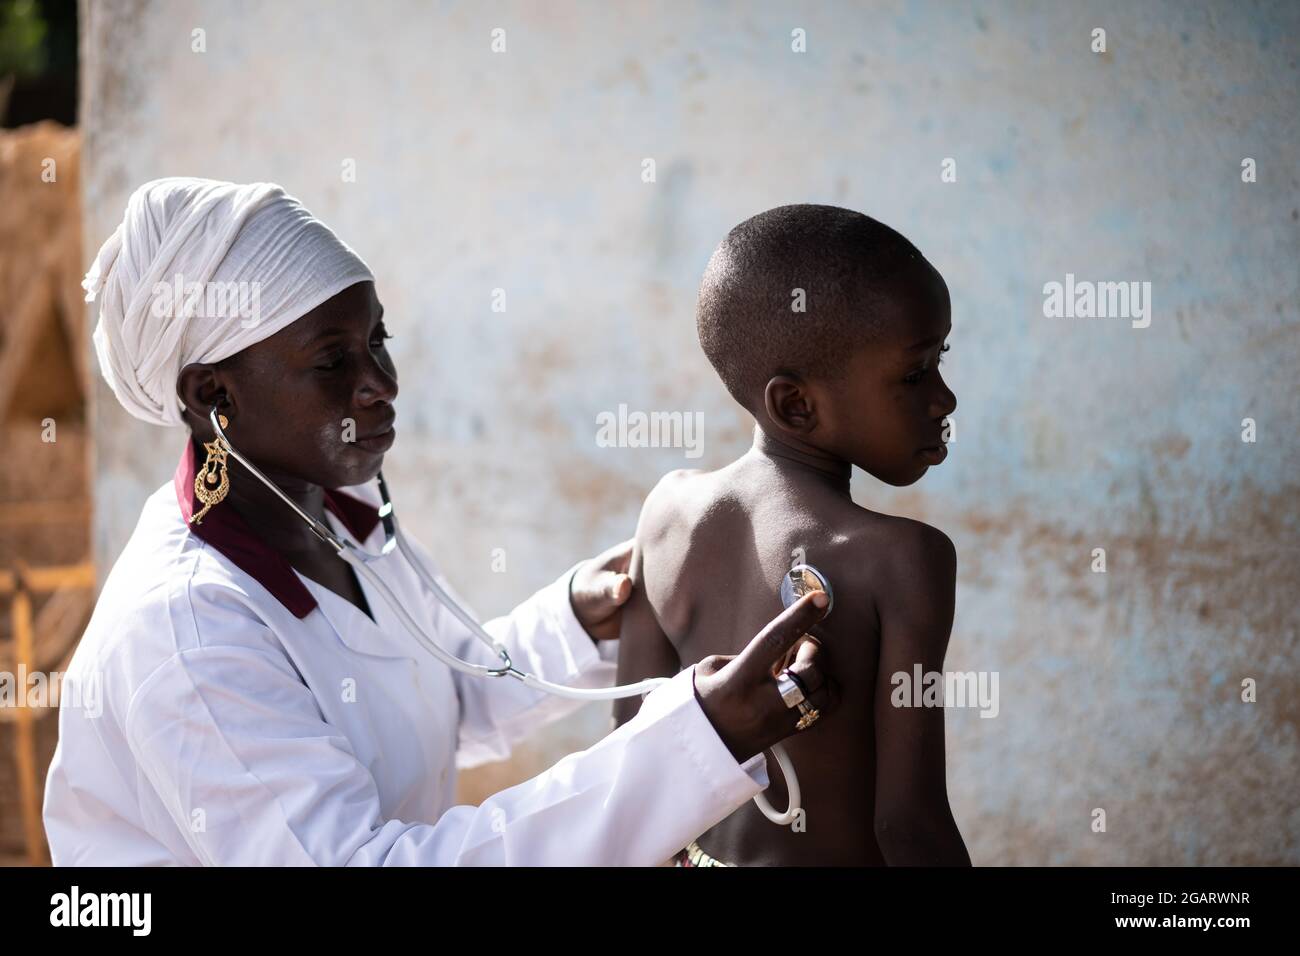 In questa immagine, un attento medico africano nero sta esaminando la funzione respiratoria e cardiaca di un piccolo bambino con uno stetoscopio Foto Stock